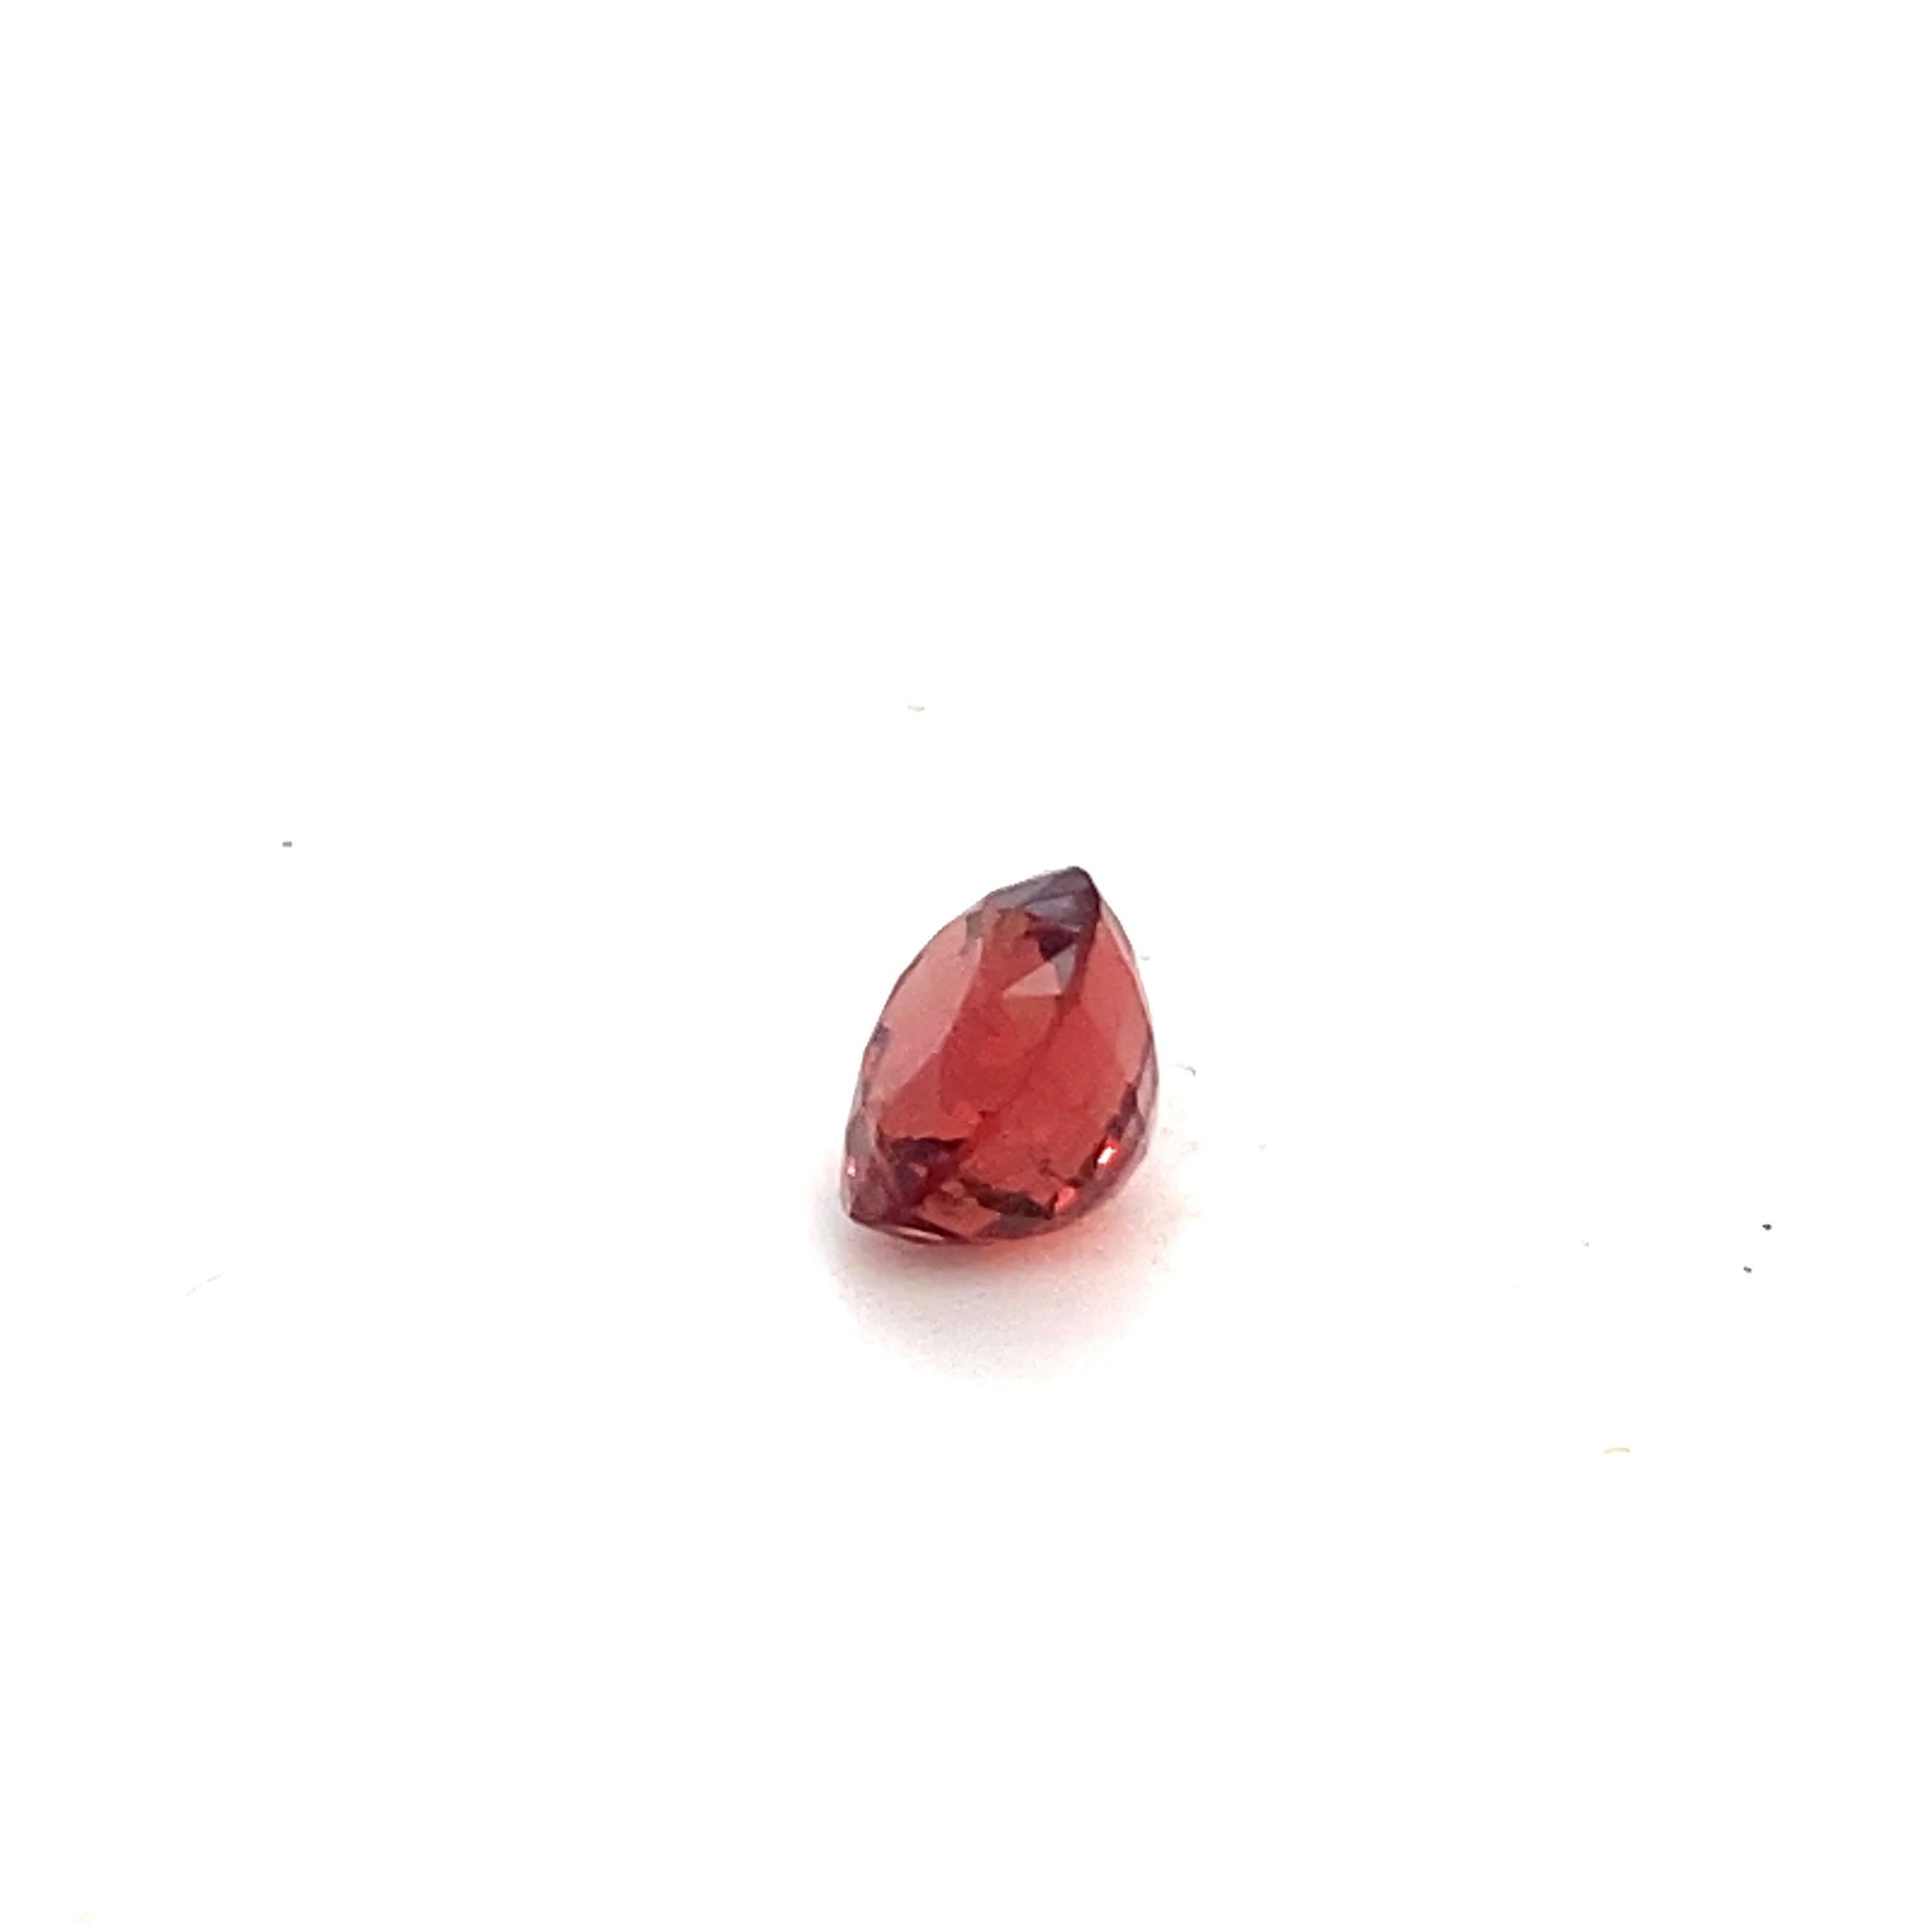 2.10 Carat Oval Shape Natural Red Spinel Loose Gemstone For Sale 6